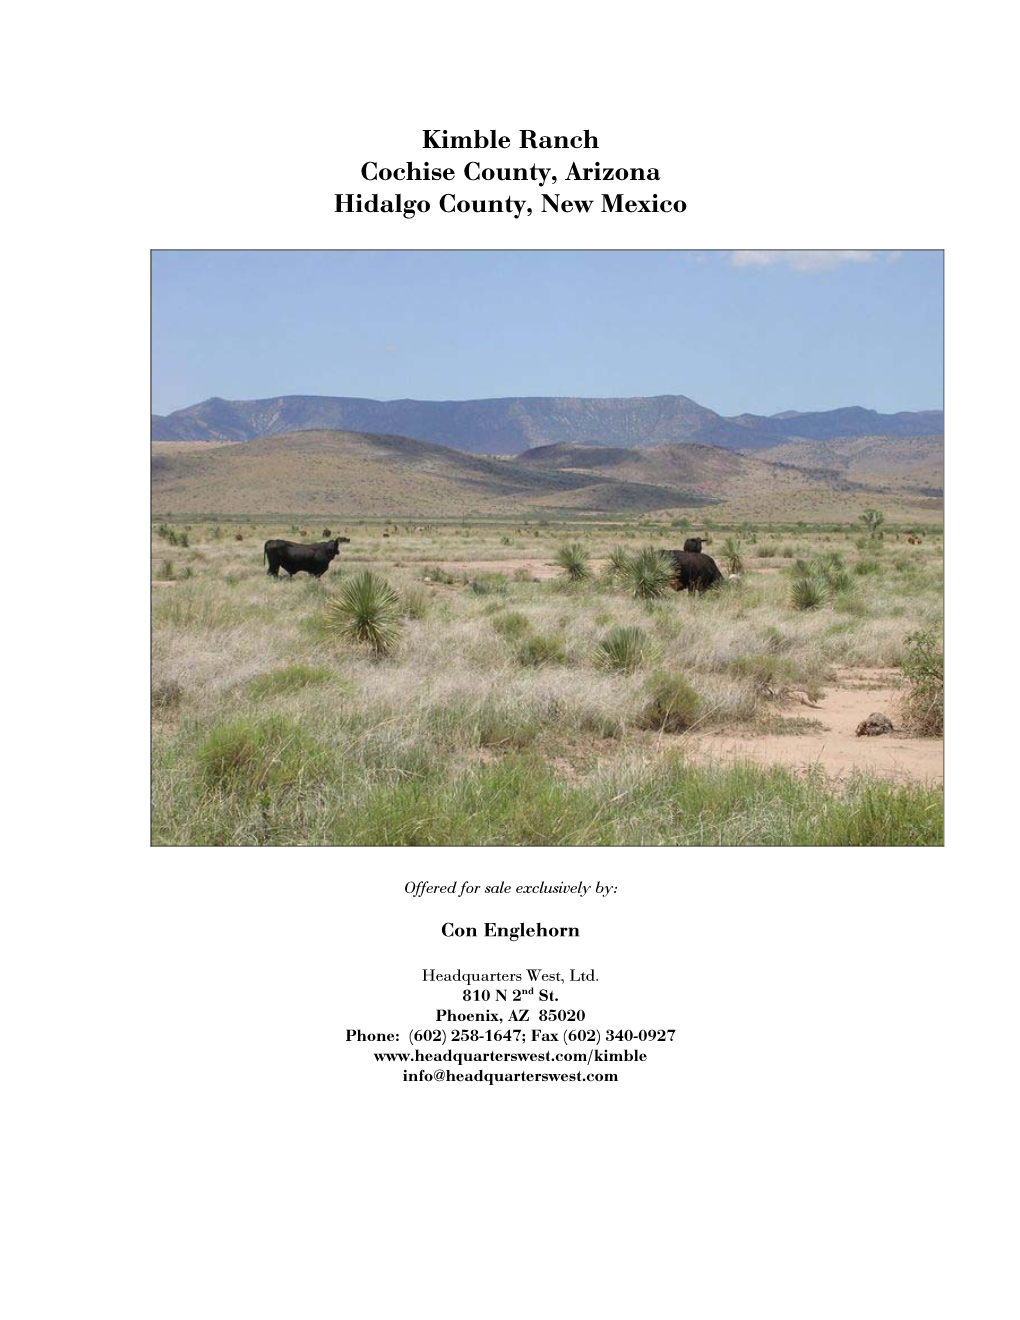 Kimble Ranch Cochise County, Arizona Hidalgo County, New Mexico